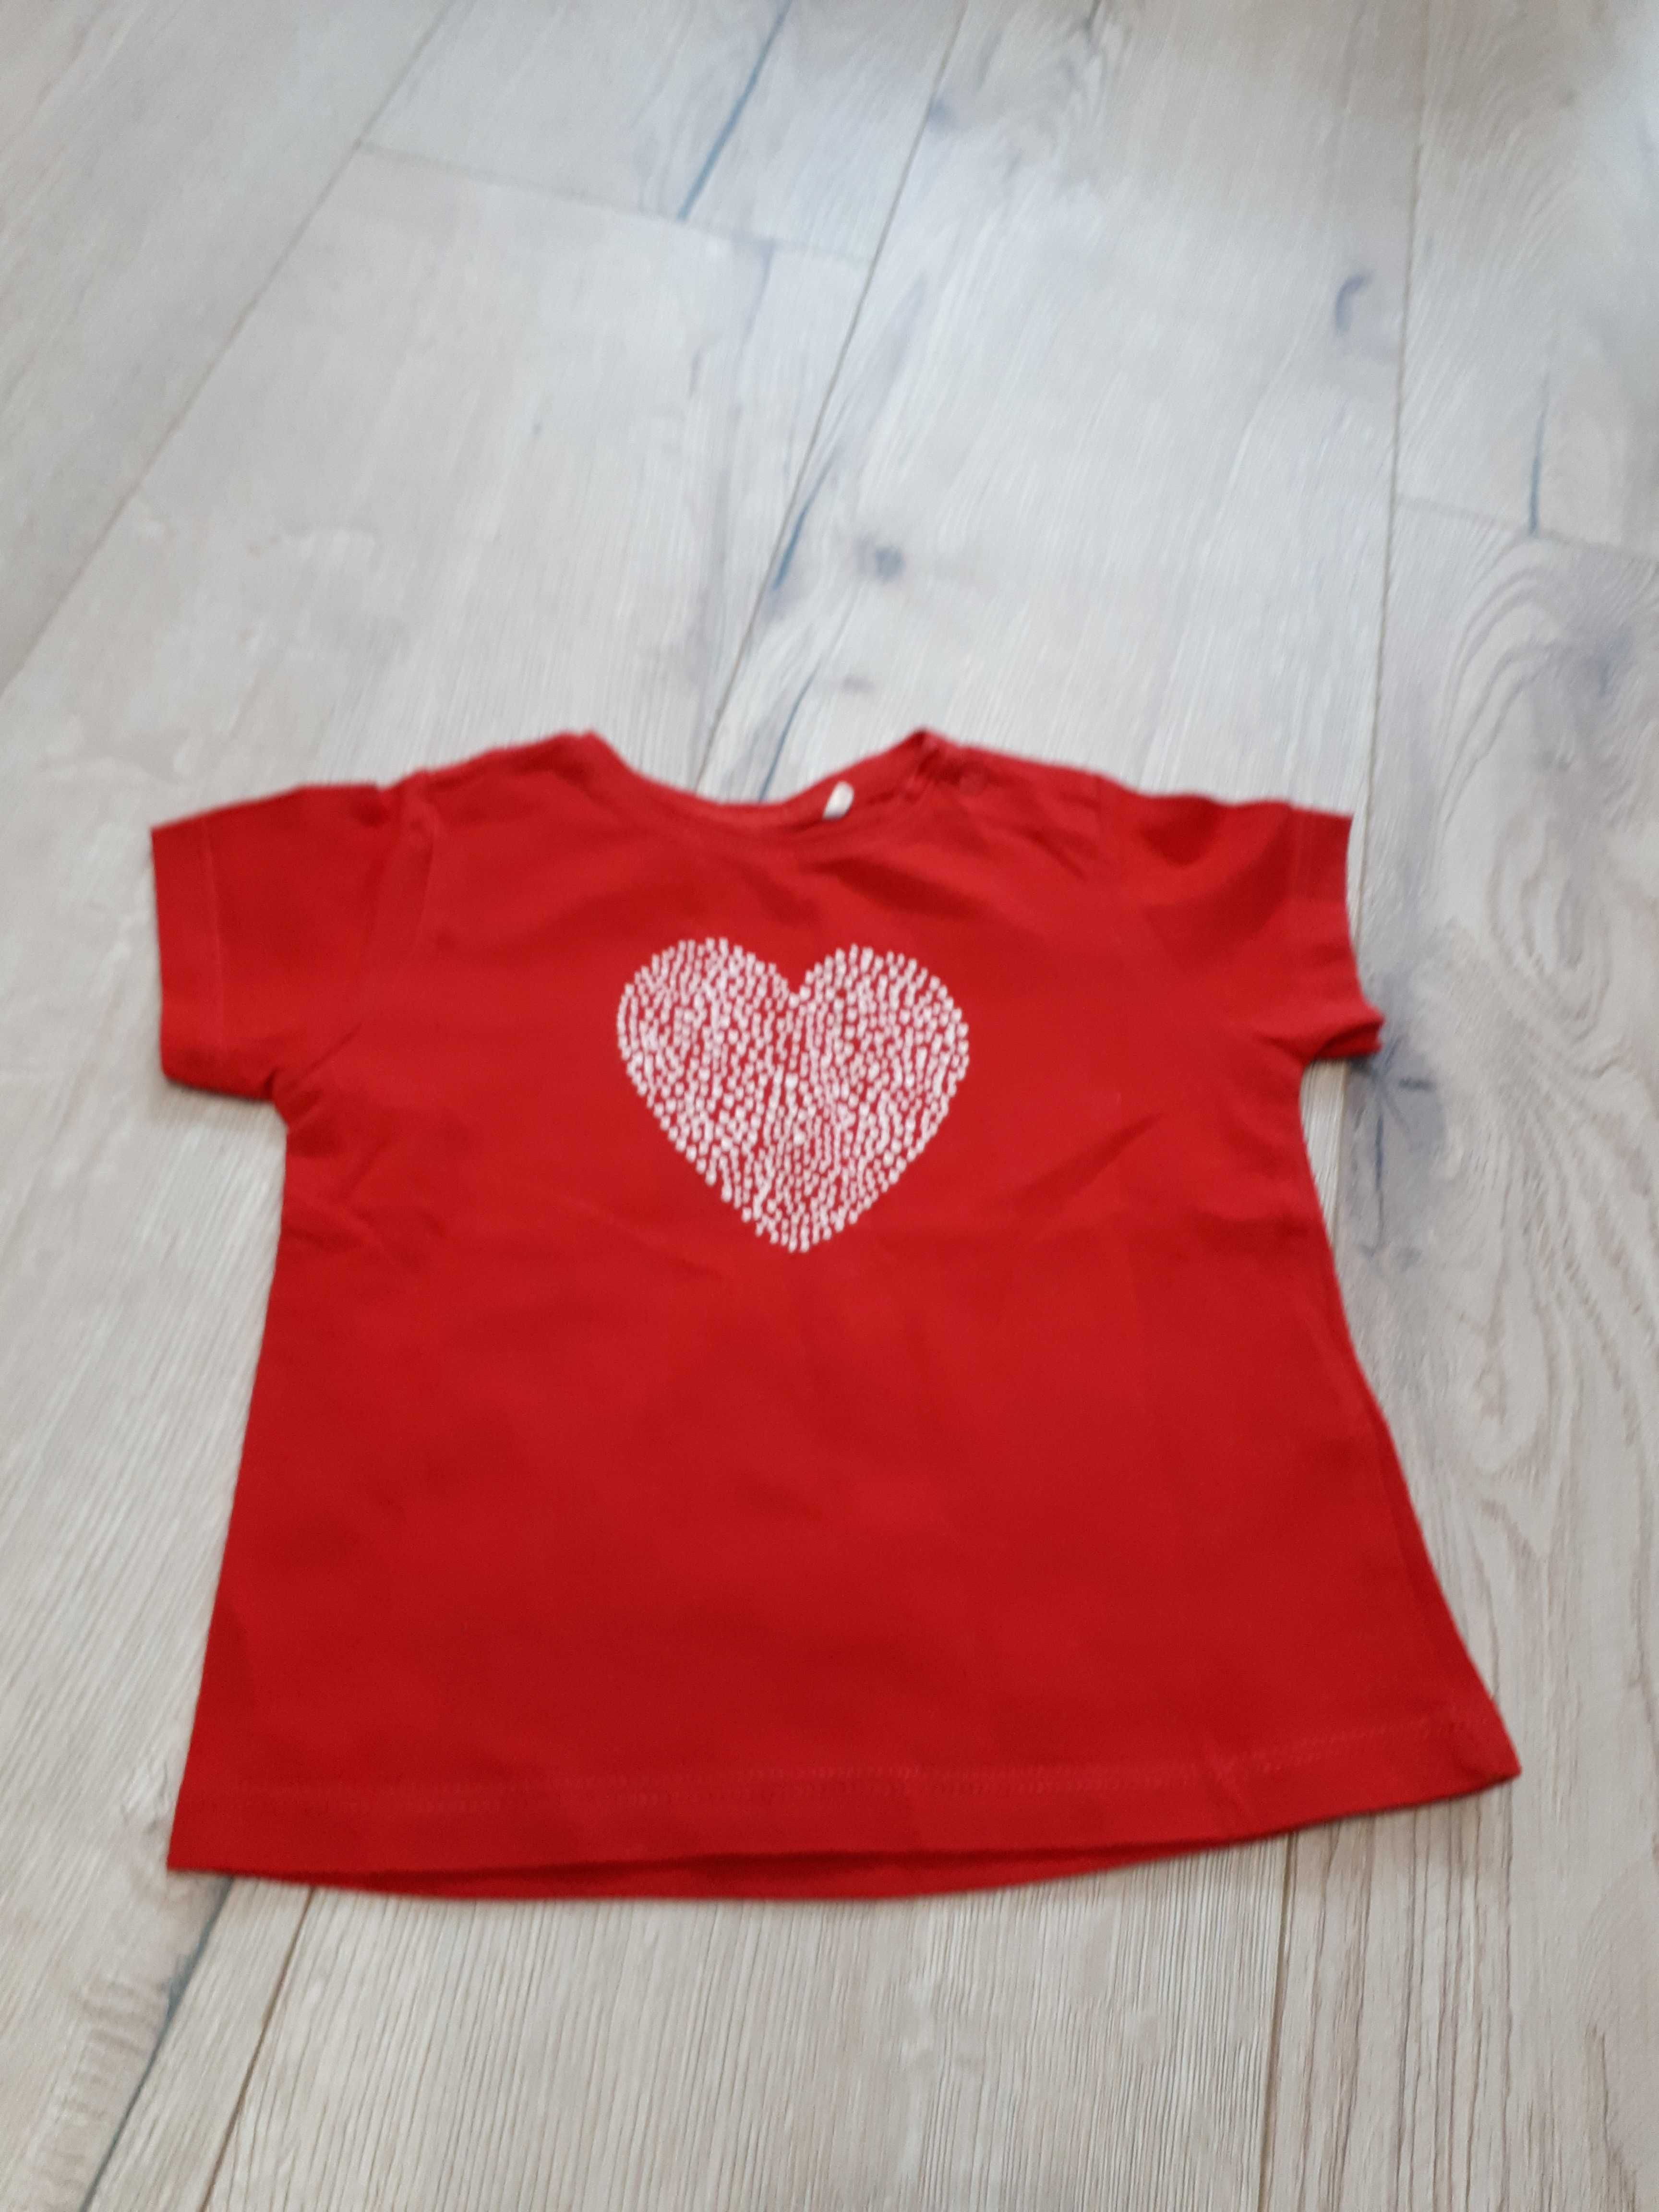 T-shirt dziewczęcy, czerwony, serce 68